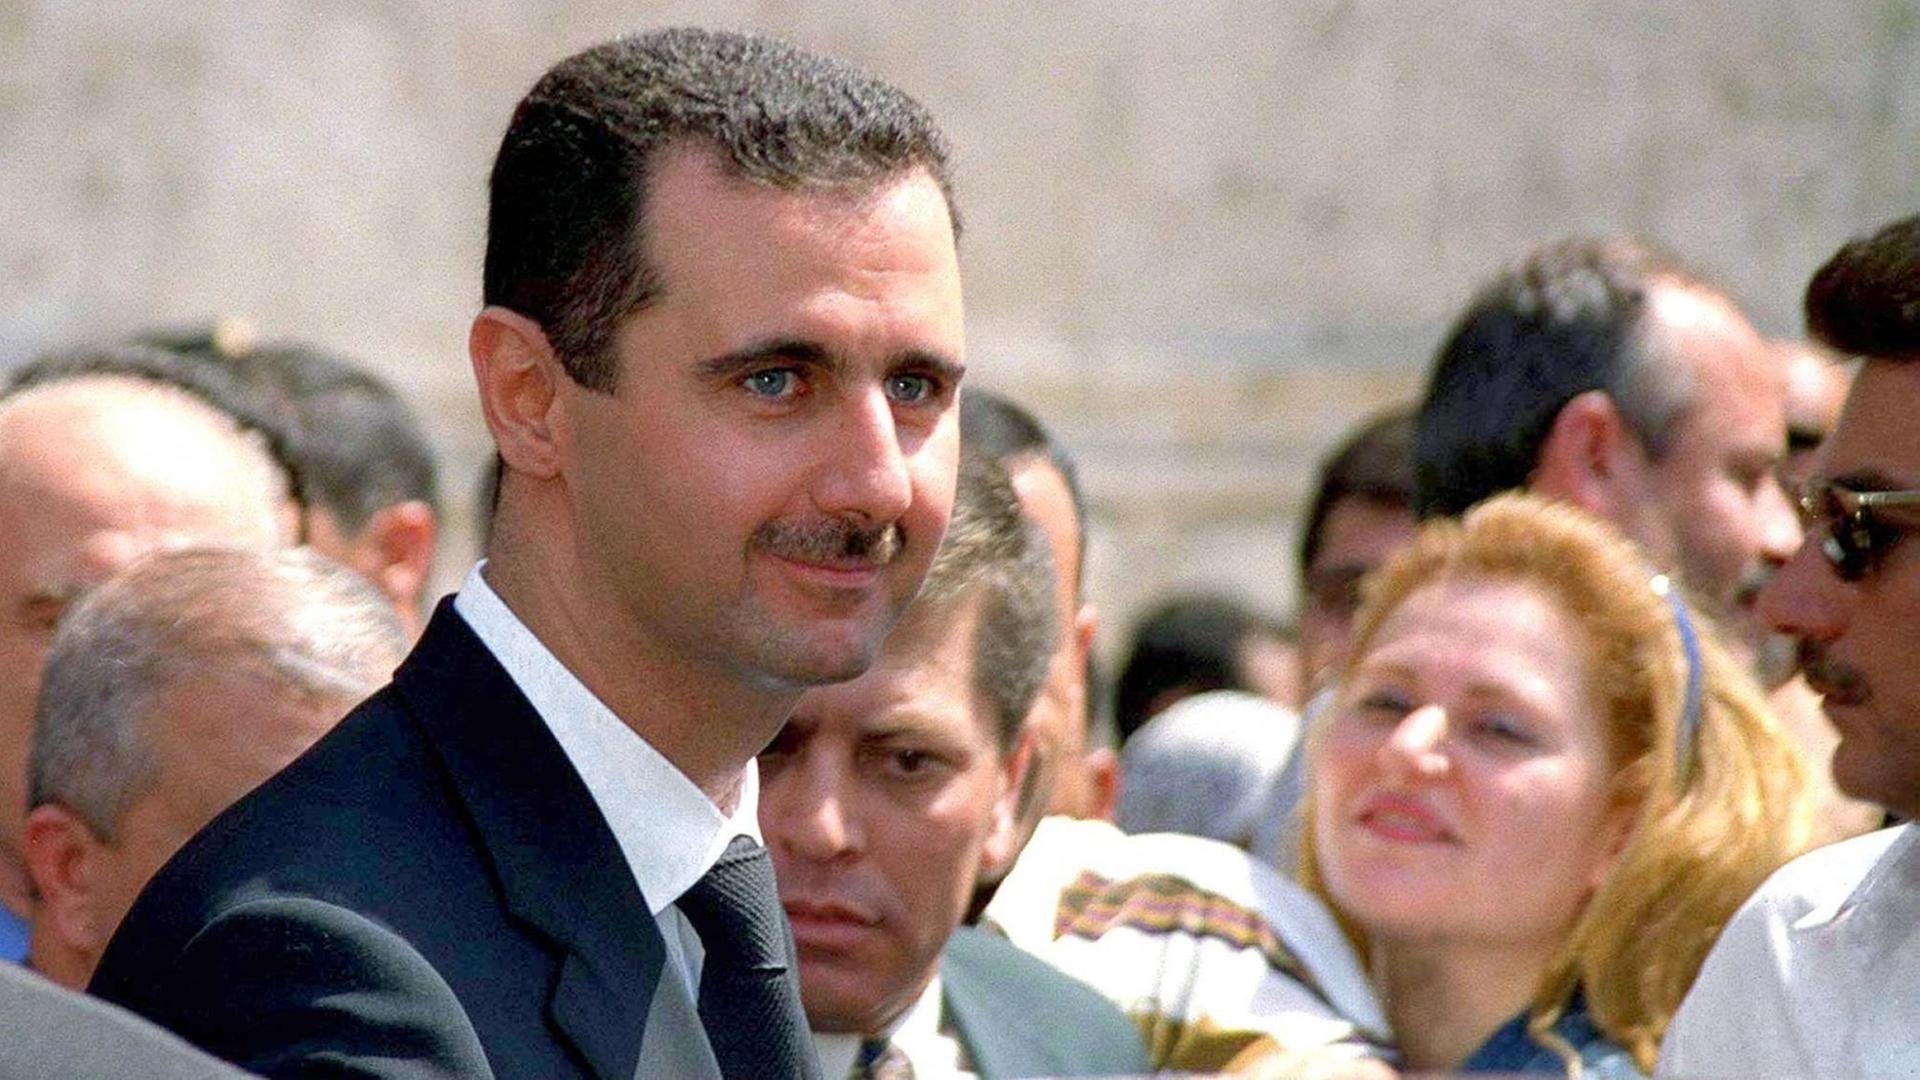 Baschar al-Assad steht in einer Menschenmenge.